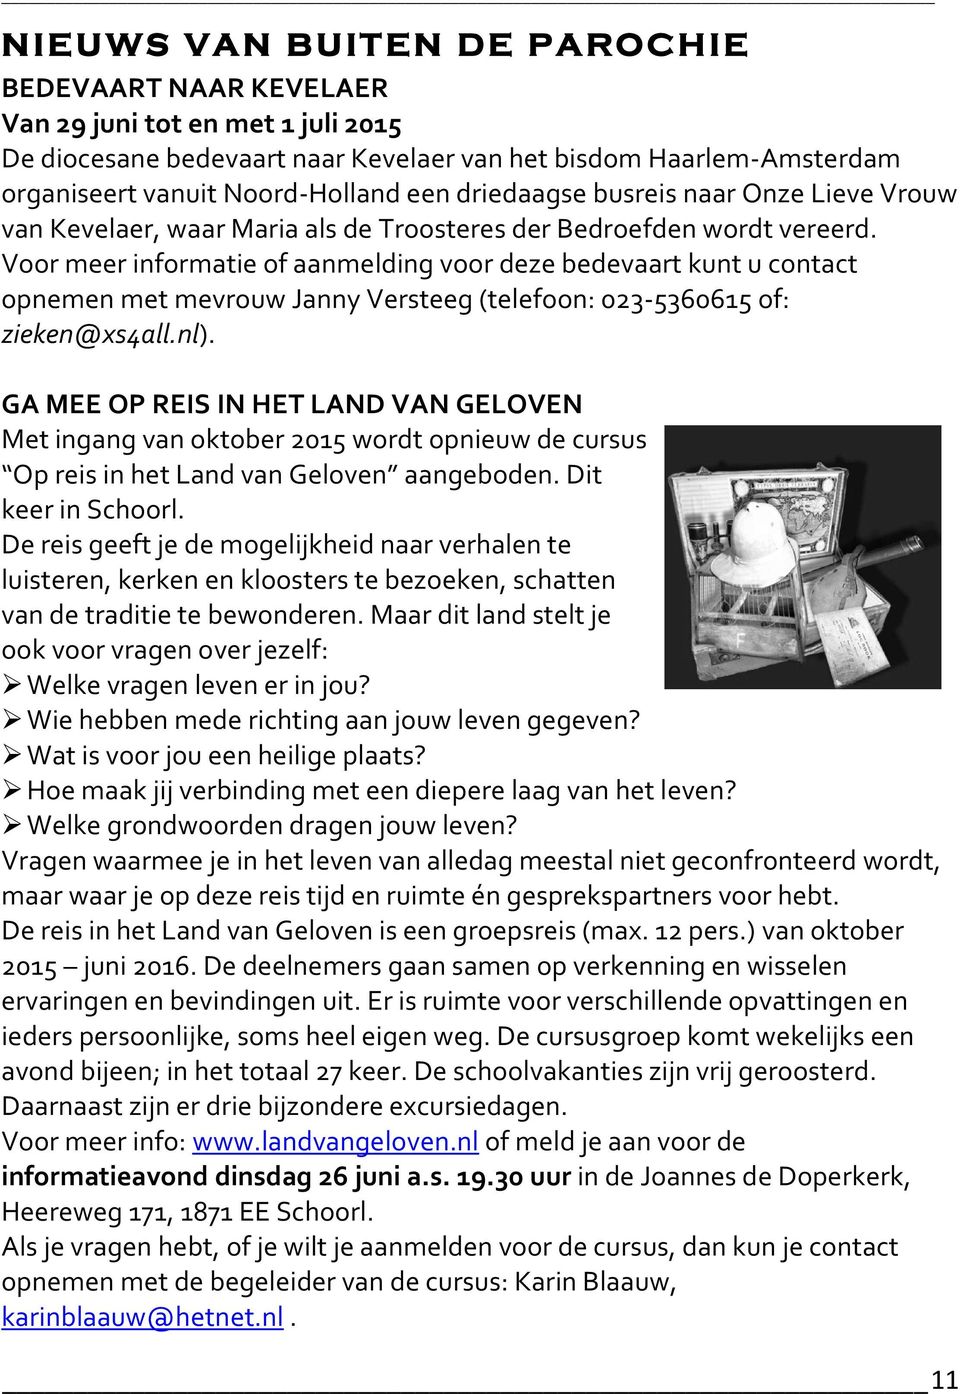 Voor meer informatie of aanmelding voor deze bedevaart kunt u contact opnemen met mevrouw Janny Versteeg (telefoon: 023-5360615 of: zieken@xs4all.nl).